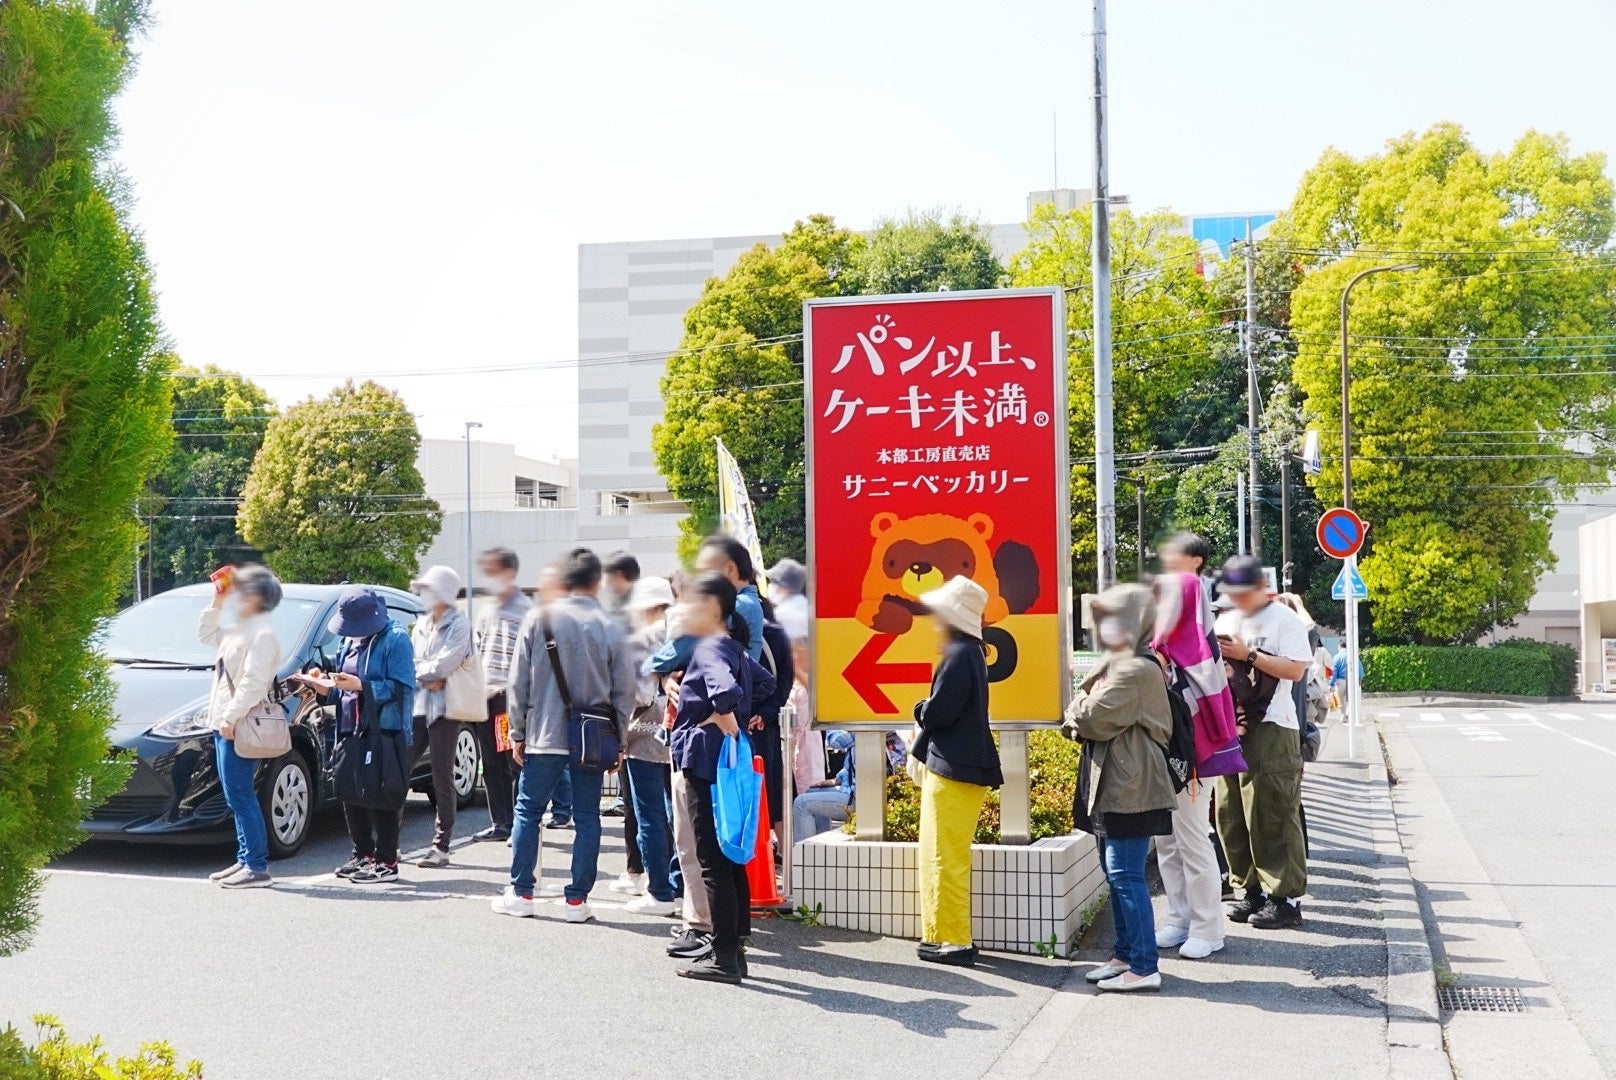 【焼き菓子のサブスク】6種の焼き菓子セットを毎月お届け！東京・立川の cocokara がサブスク専門ECモール subsc（サブスク）にオープン